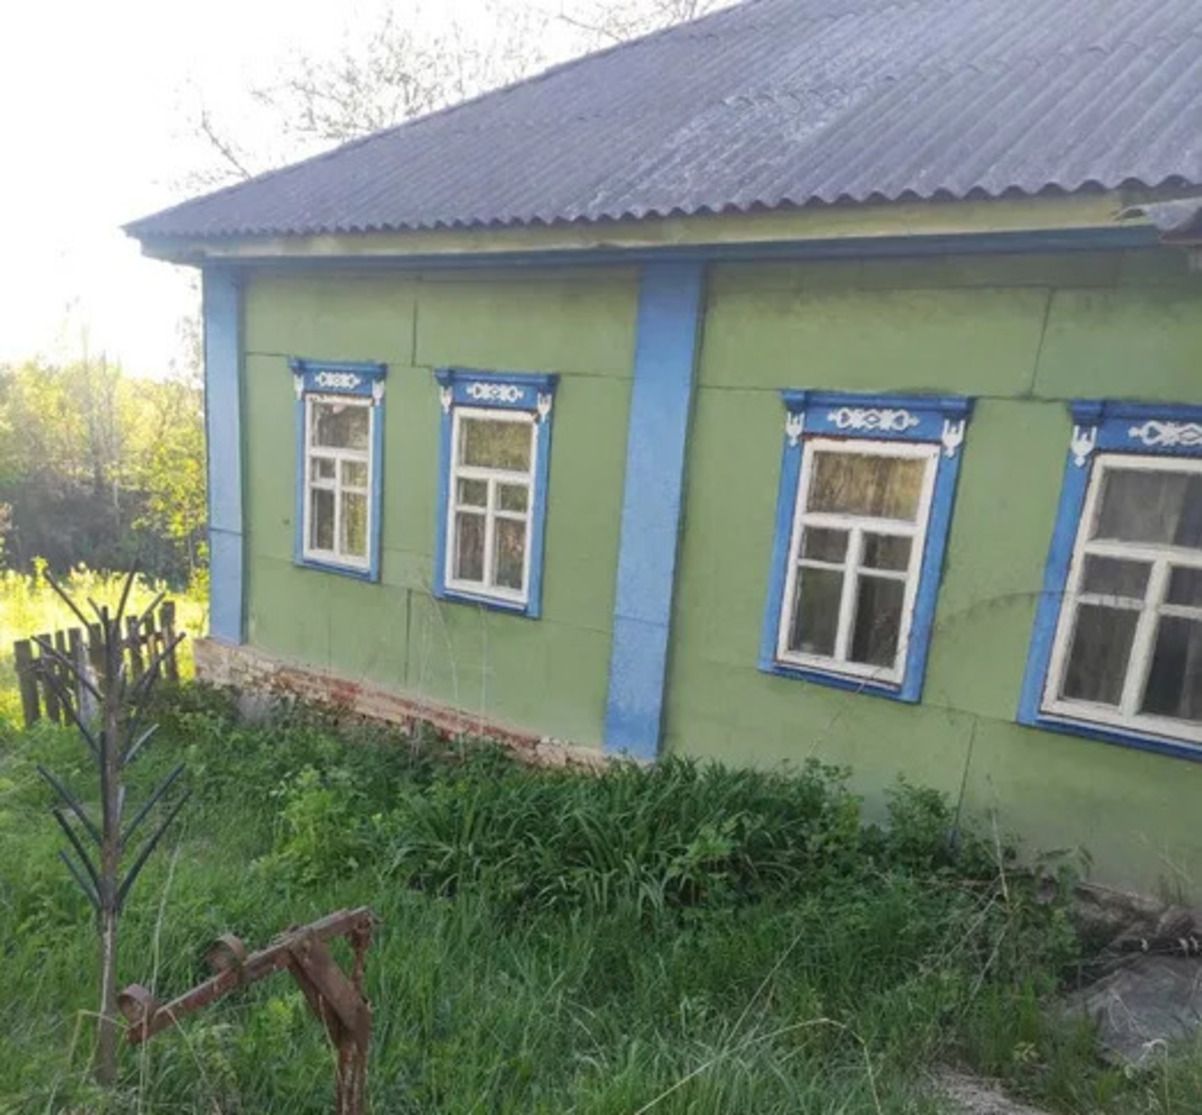 Дом за 30 тысяч гривен - где в Украине продают такое жилье - Недвижимость